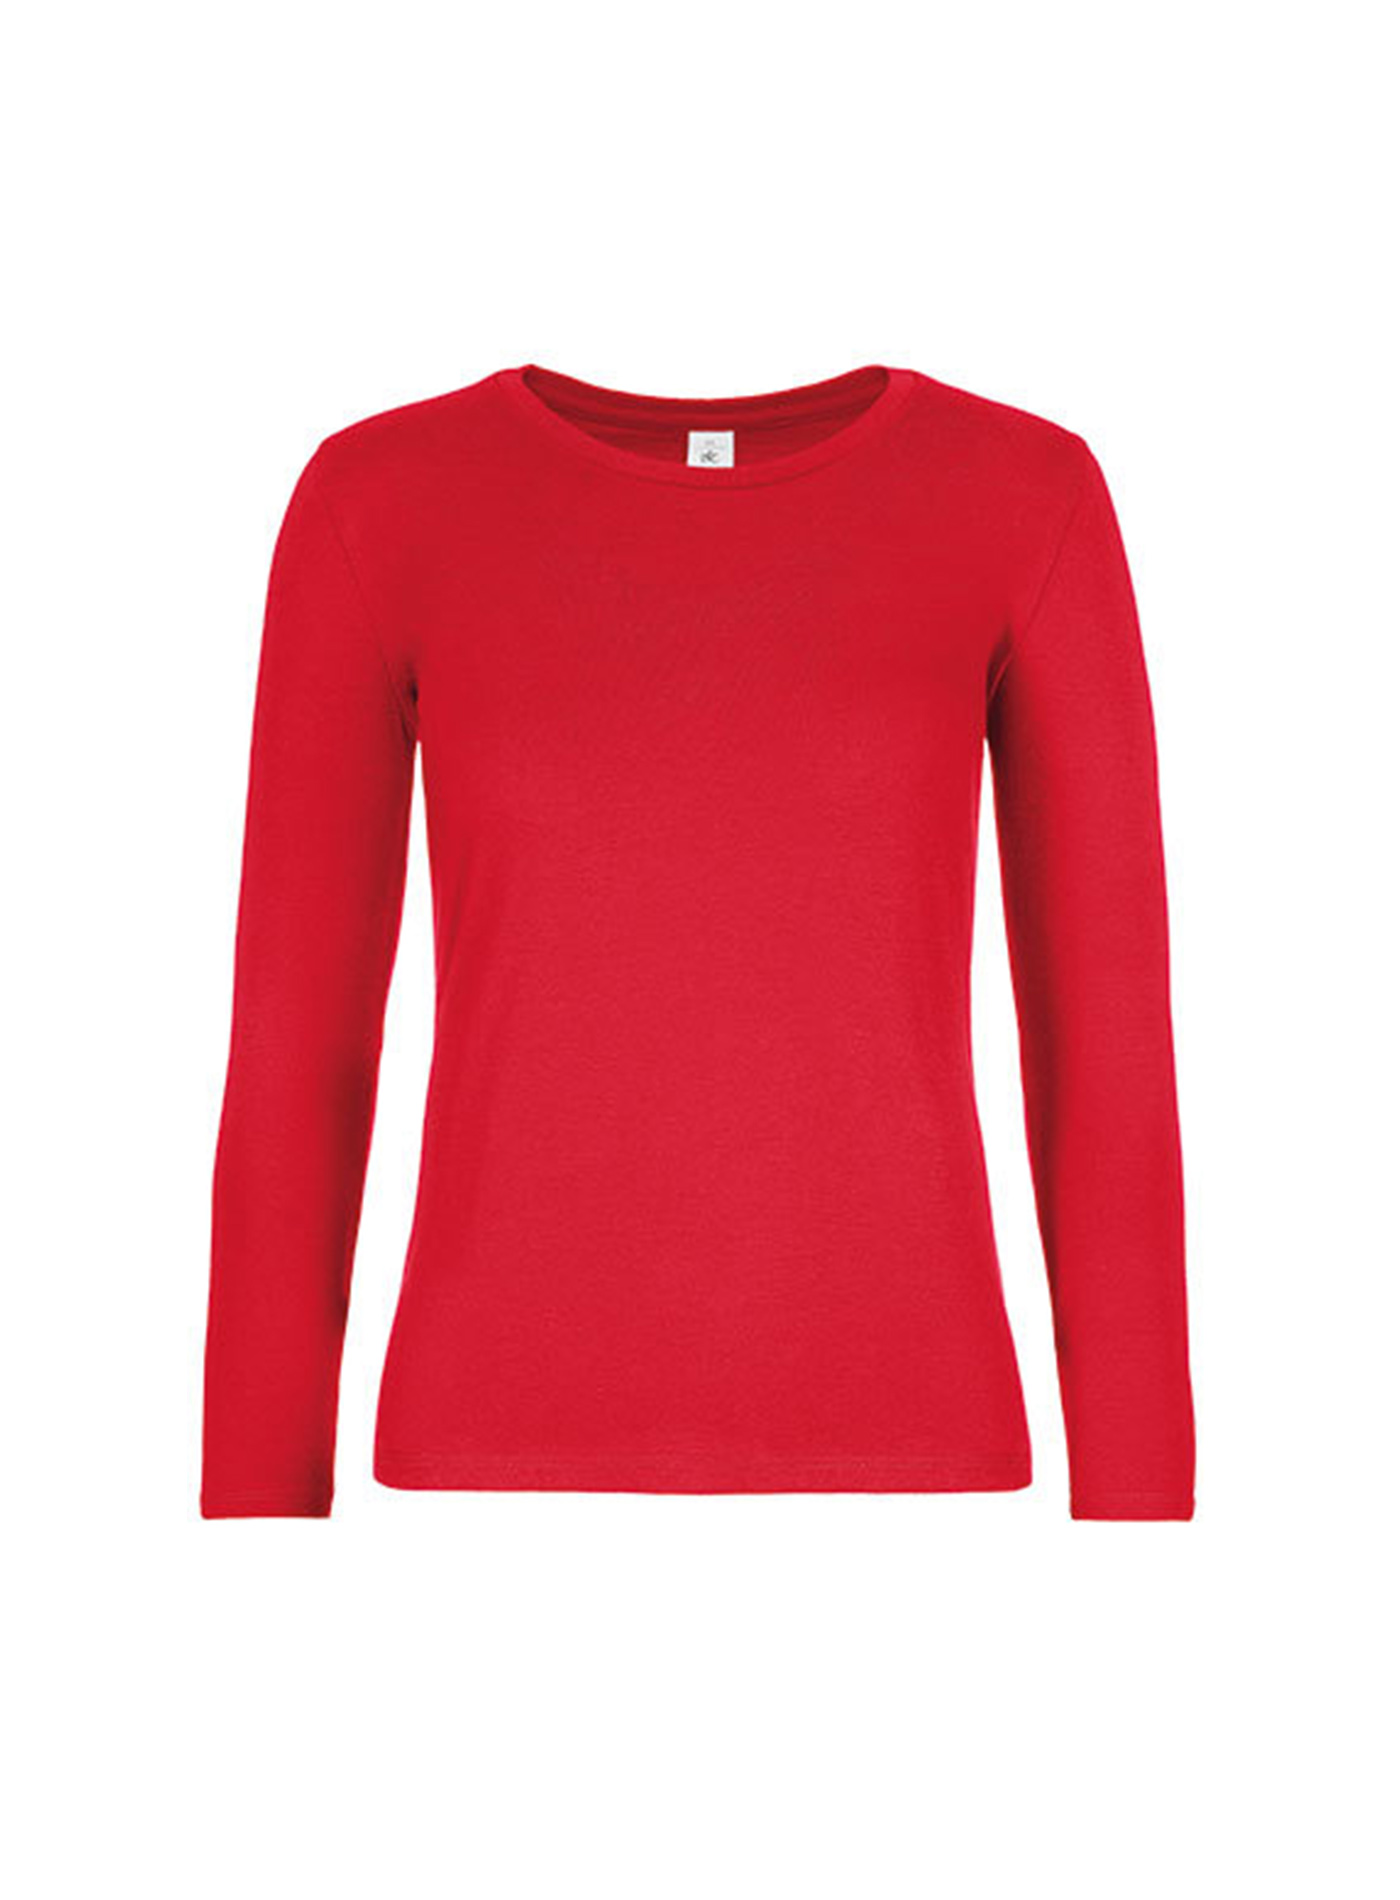 Dámské tričko s dlouhým rukávem B&C Collection - Červená XS